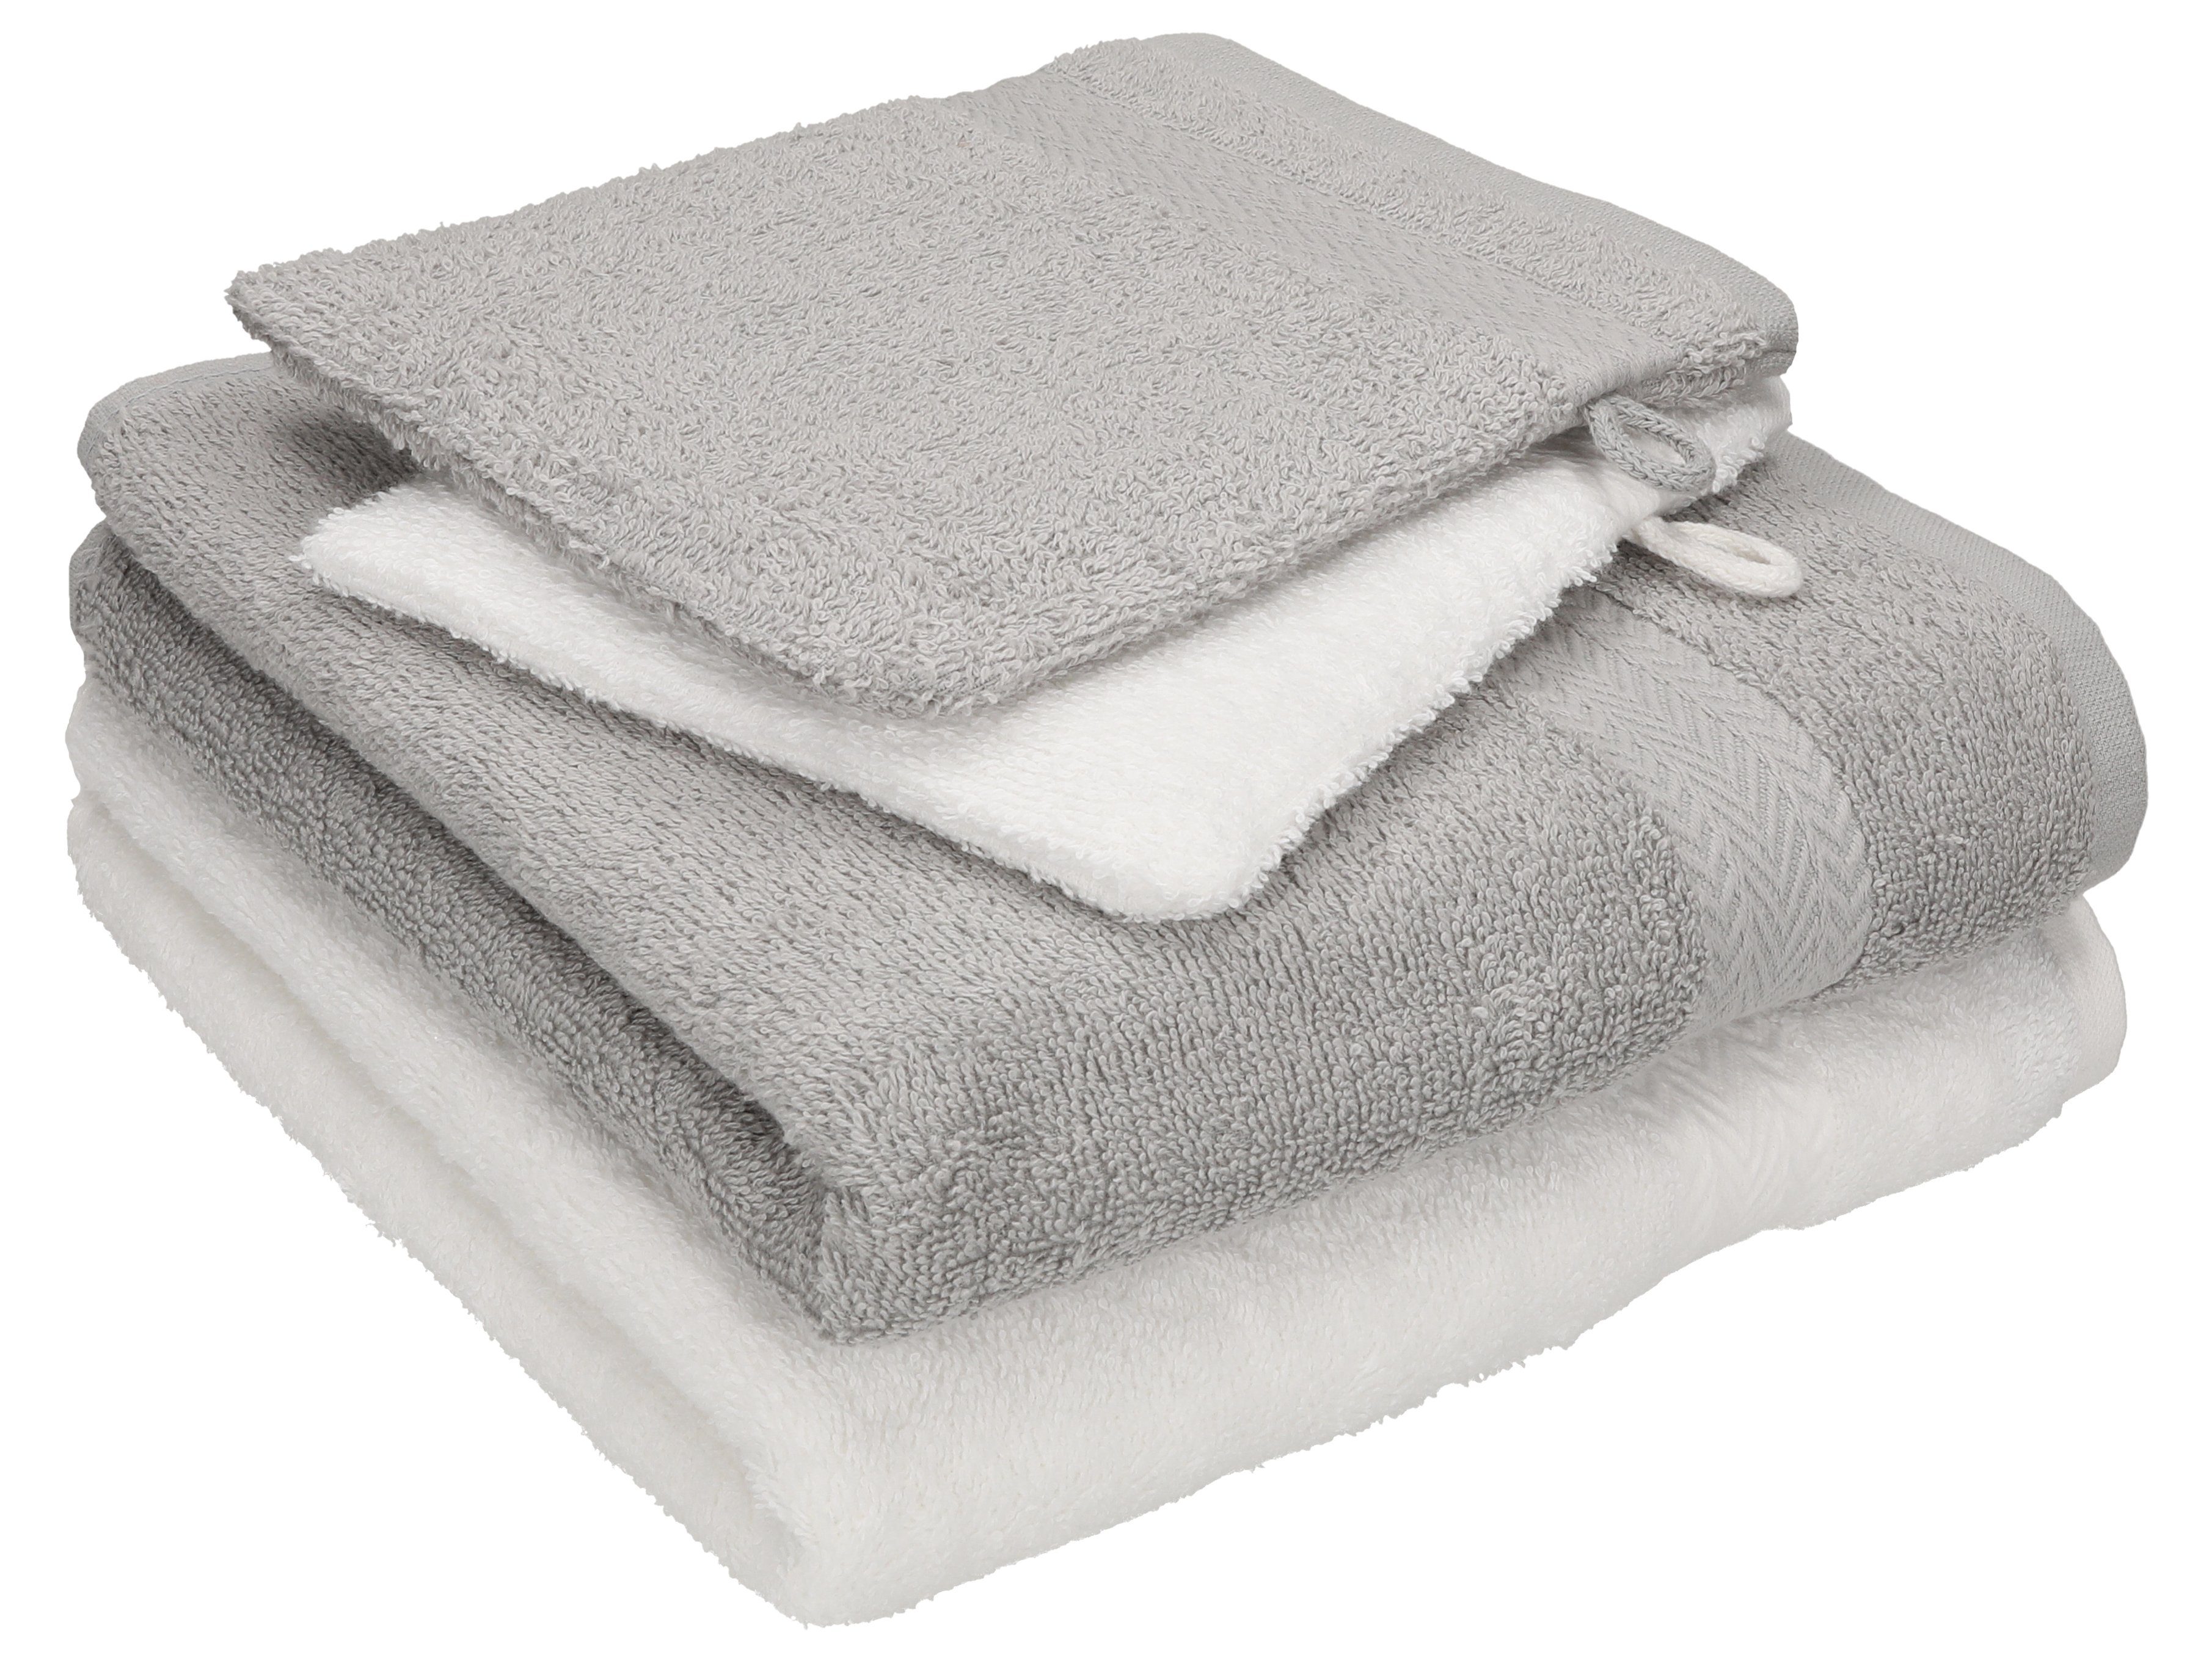 Betz Handtuch Set 4 TLG. Handtuch Set Happy Pack 100% Baumwolle 2 Handtücher 2 Waschhandschuhe, 100% Baumwolle silbergrau-weiß